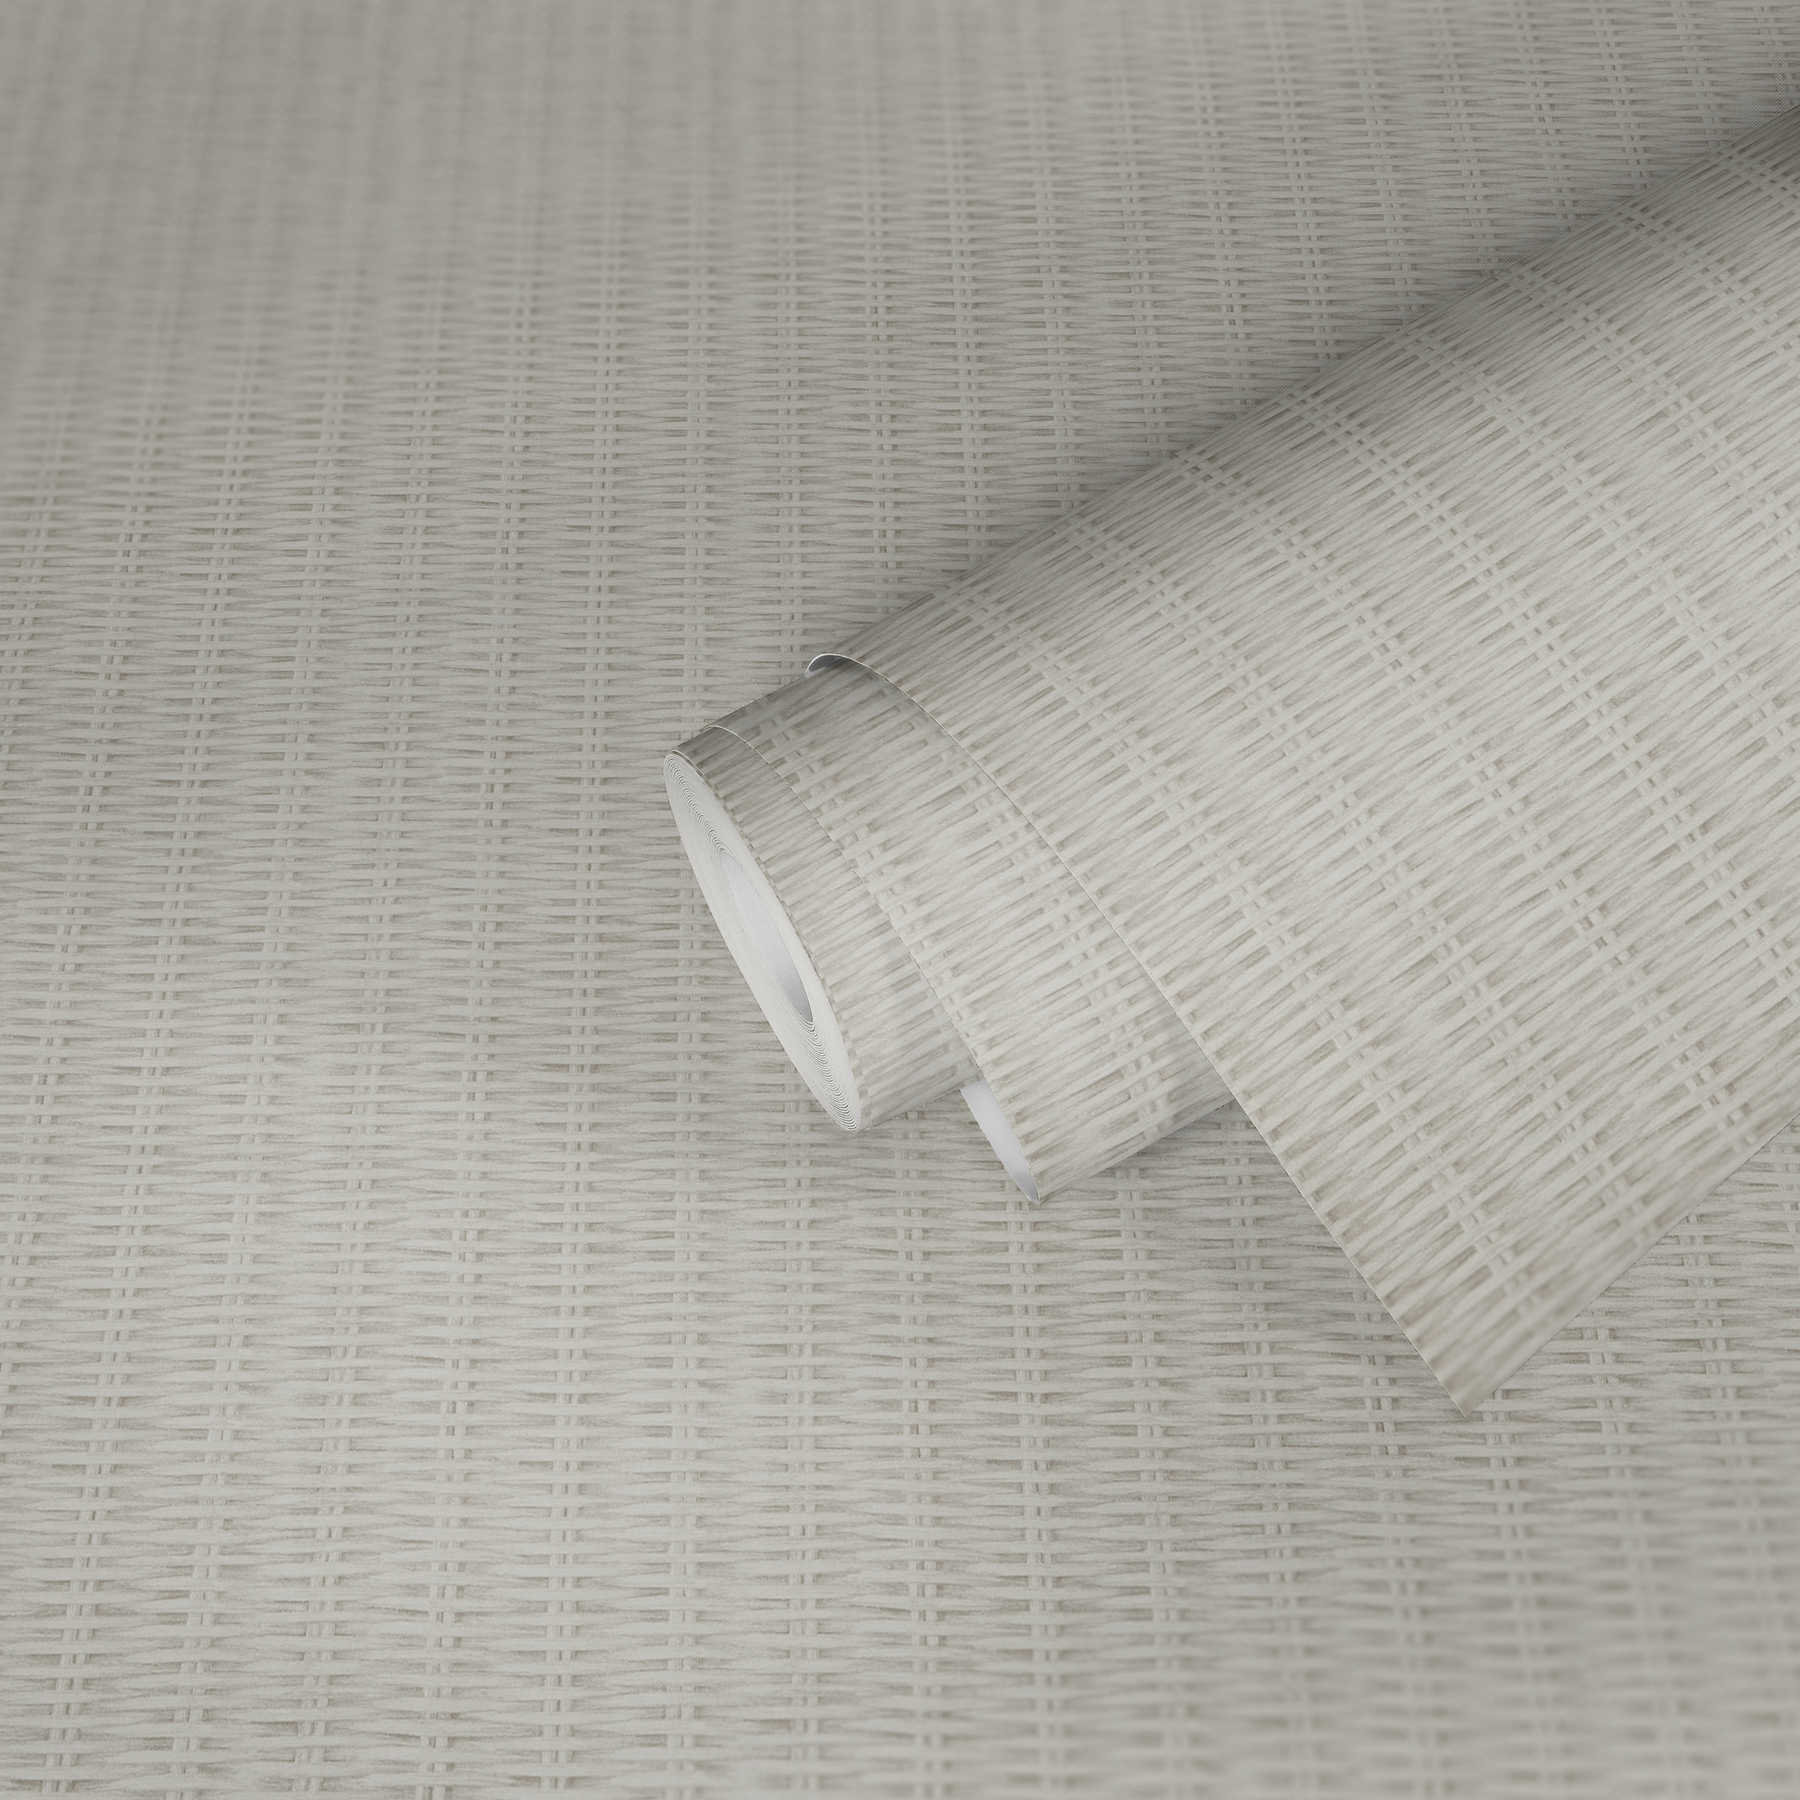             Non-woven wallpaper rattan motif - white, grey
        